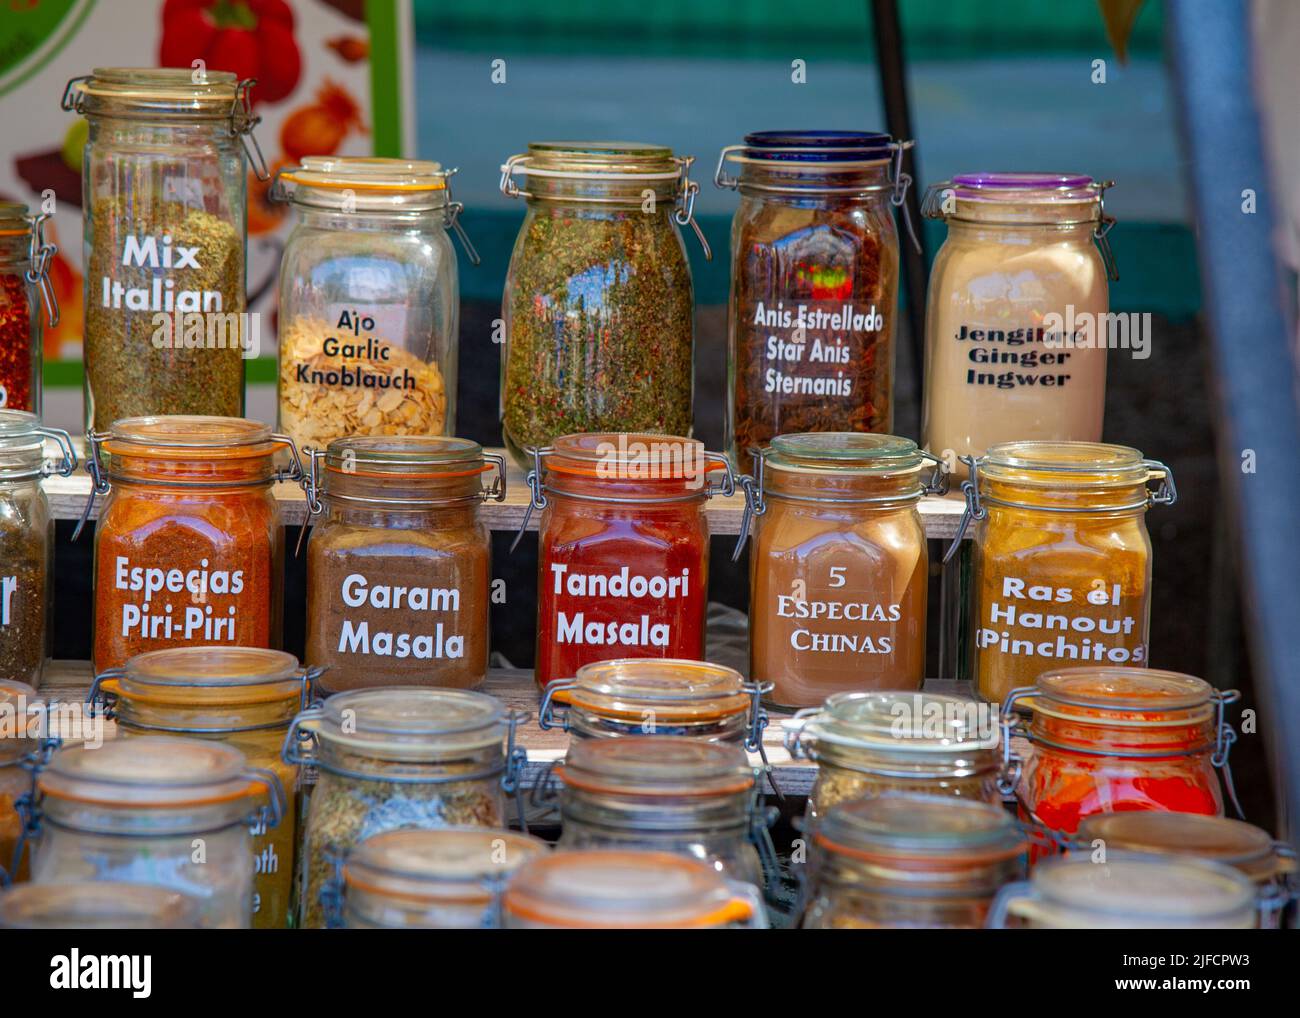 Mercato delle pulci a Puerto Rico, Canarie, commercianti vendono prodotti diversi, qui vasi con spezie diverse Foto Stock